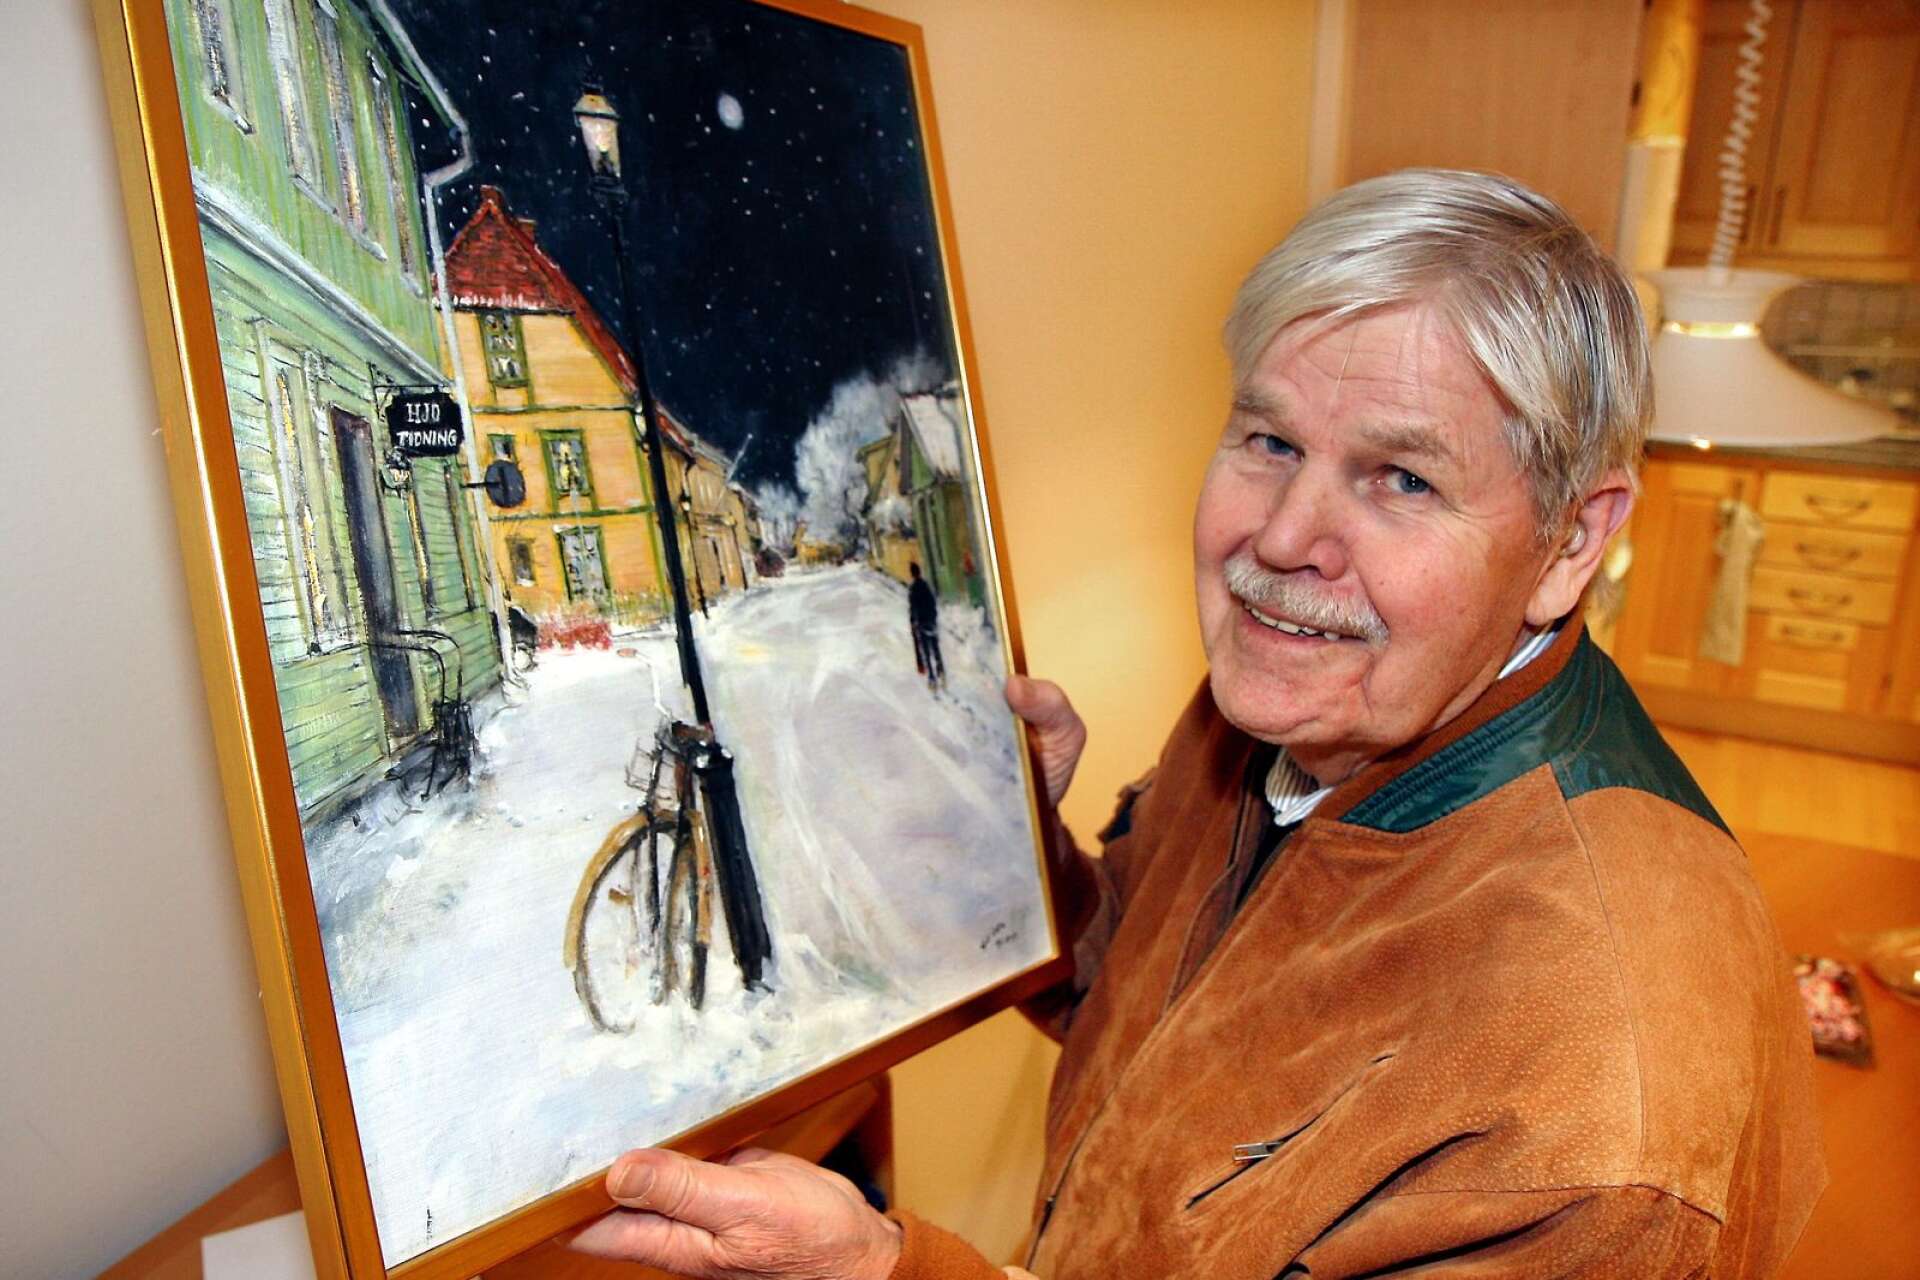 Konstnären Bengt &quot;Geiden&quot; Geidenmark satte varje år sin prägel på Hjo tidnings julbilaga med att överraska läsarna med ett julmotiv och en undangömd tomtenisse på förstasidan.